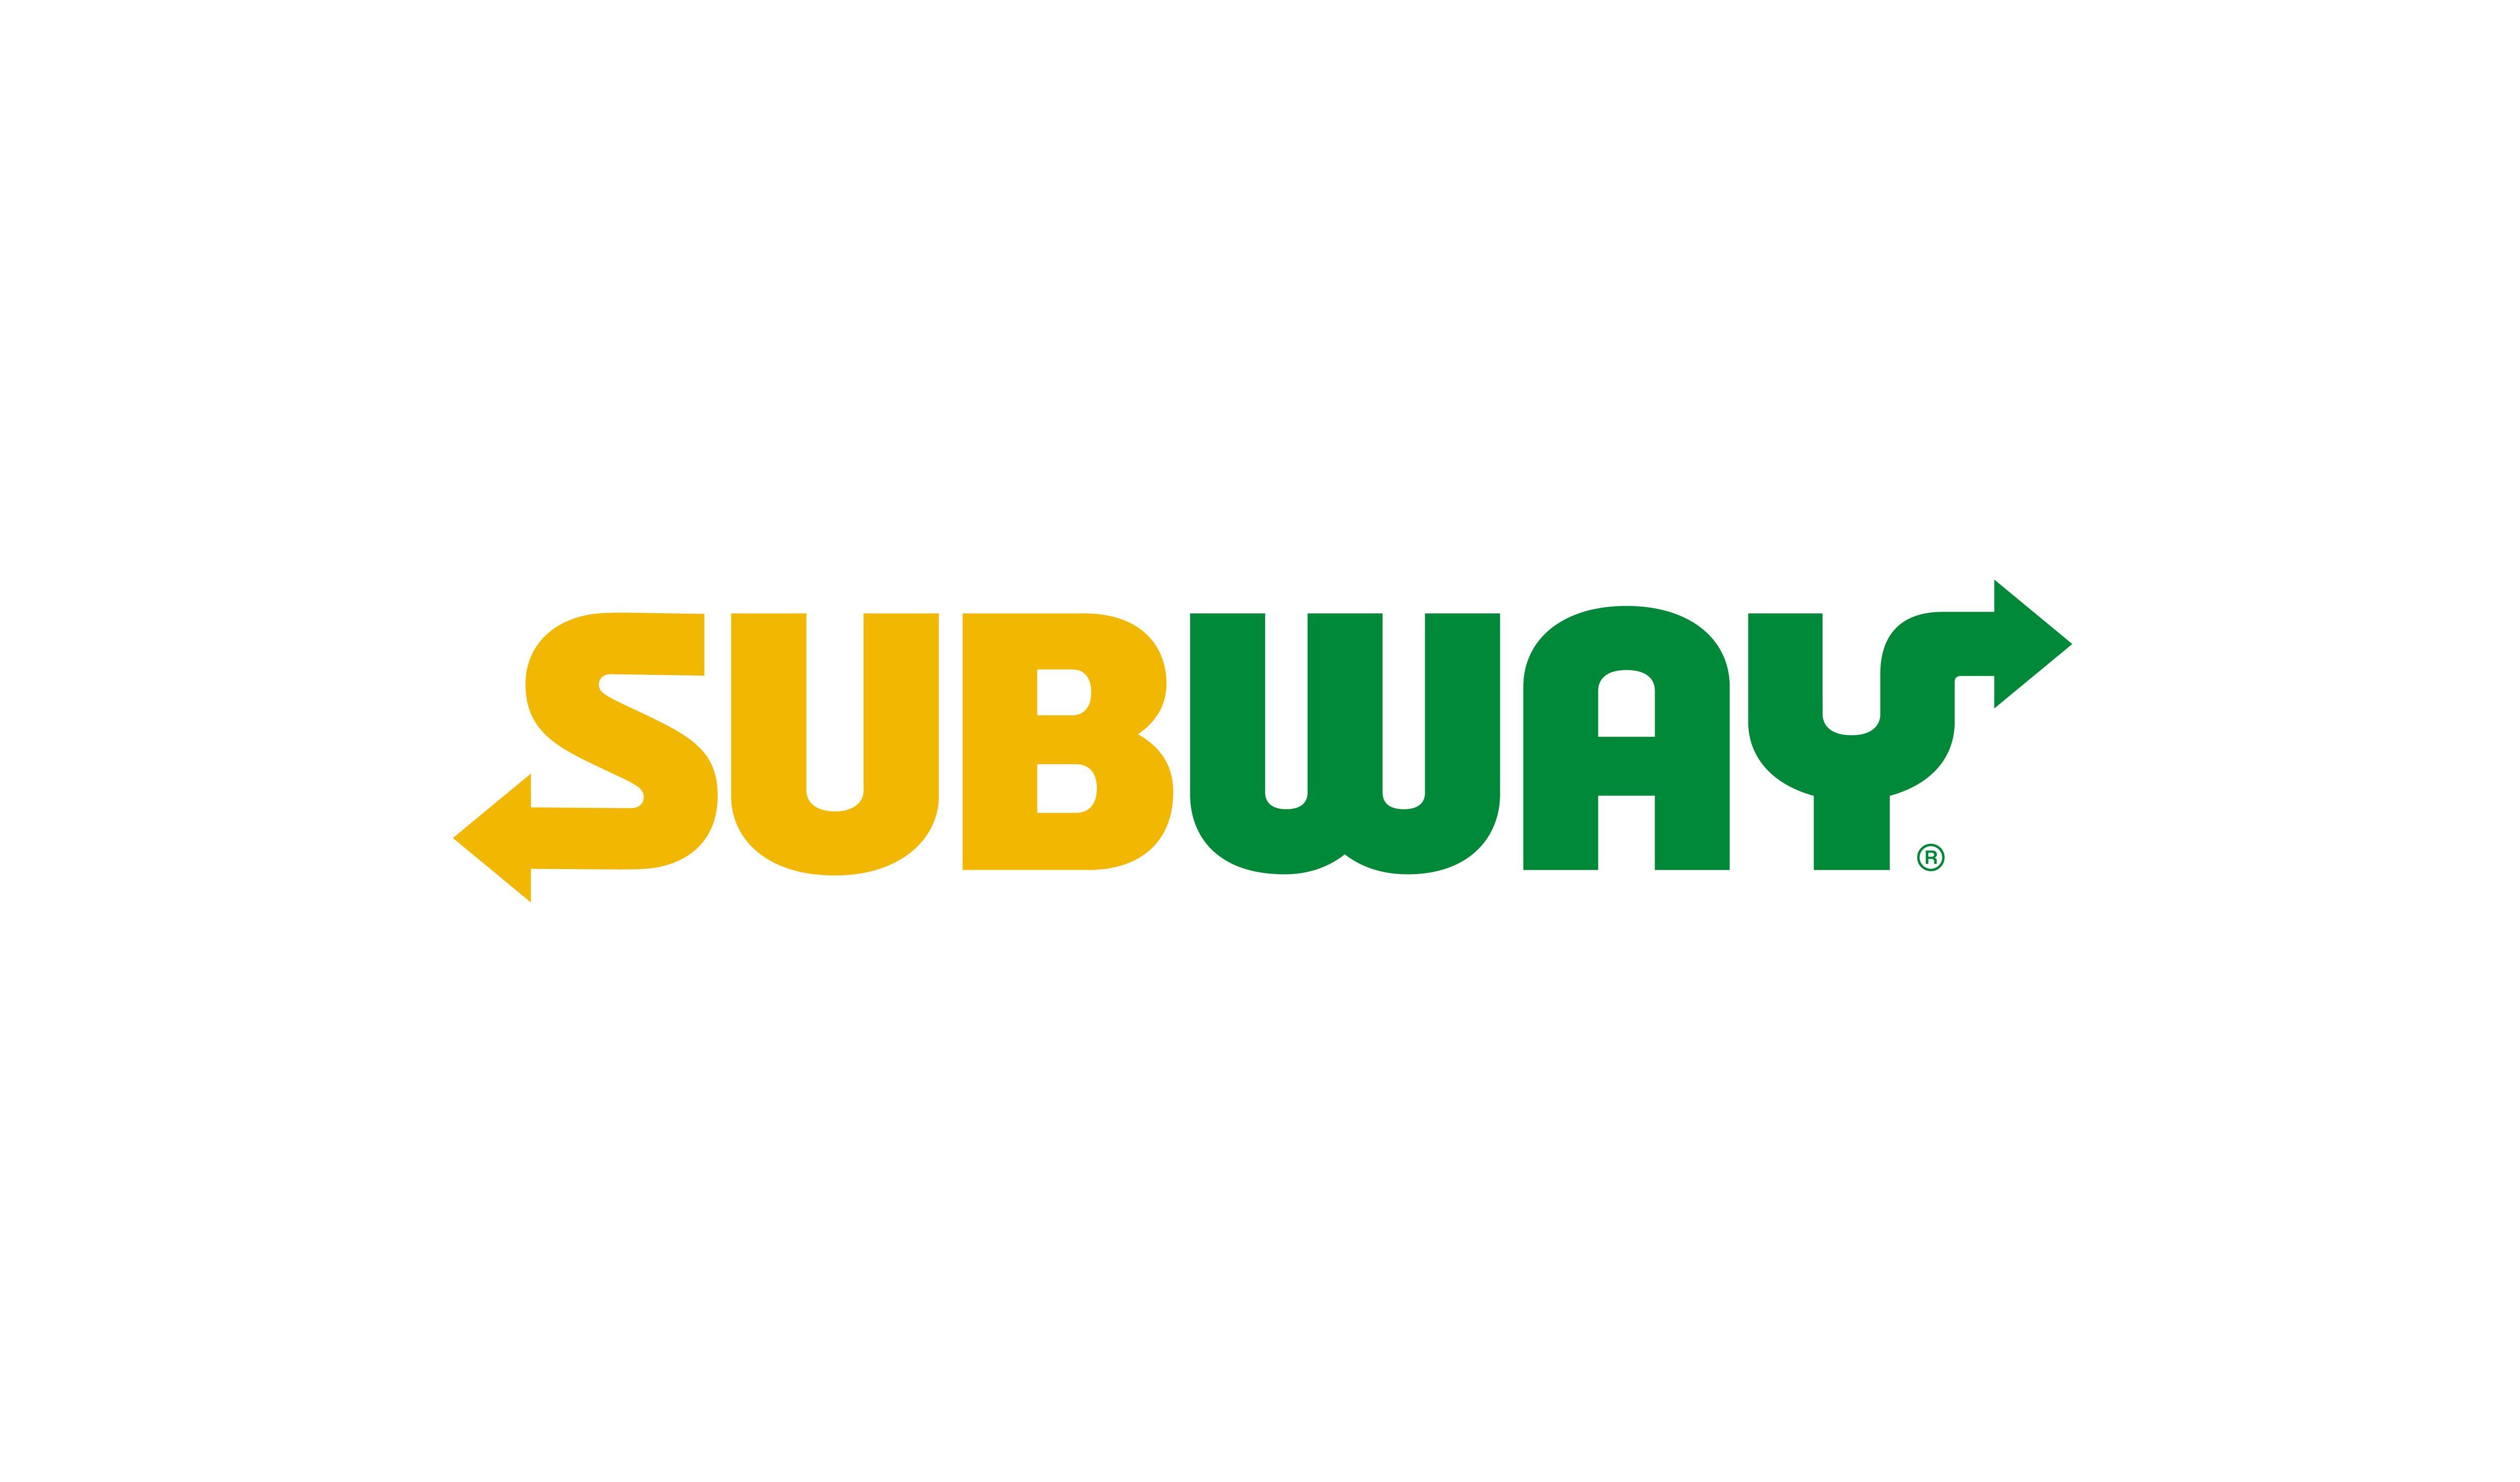 Subway Logo - Subway